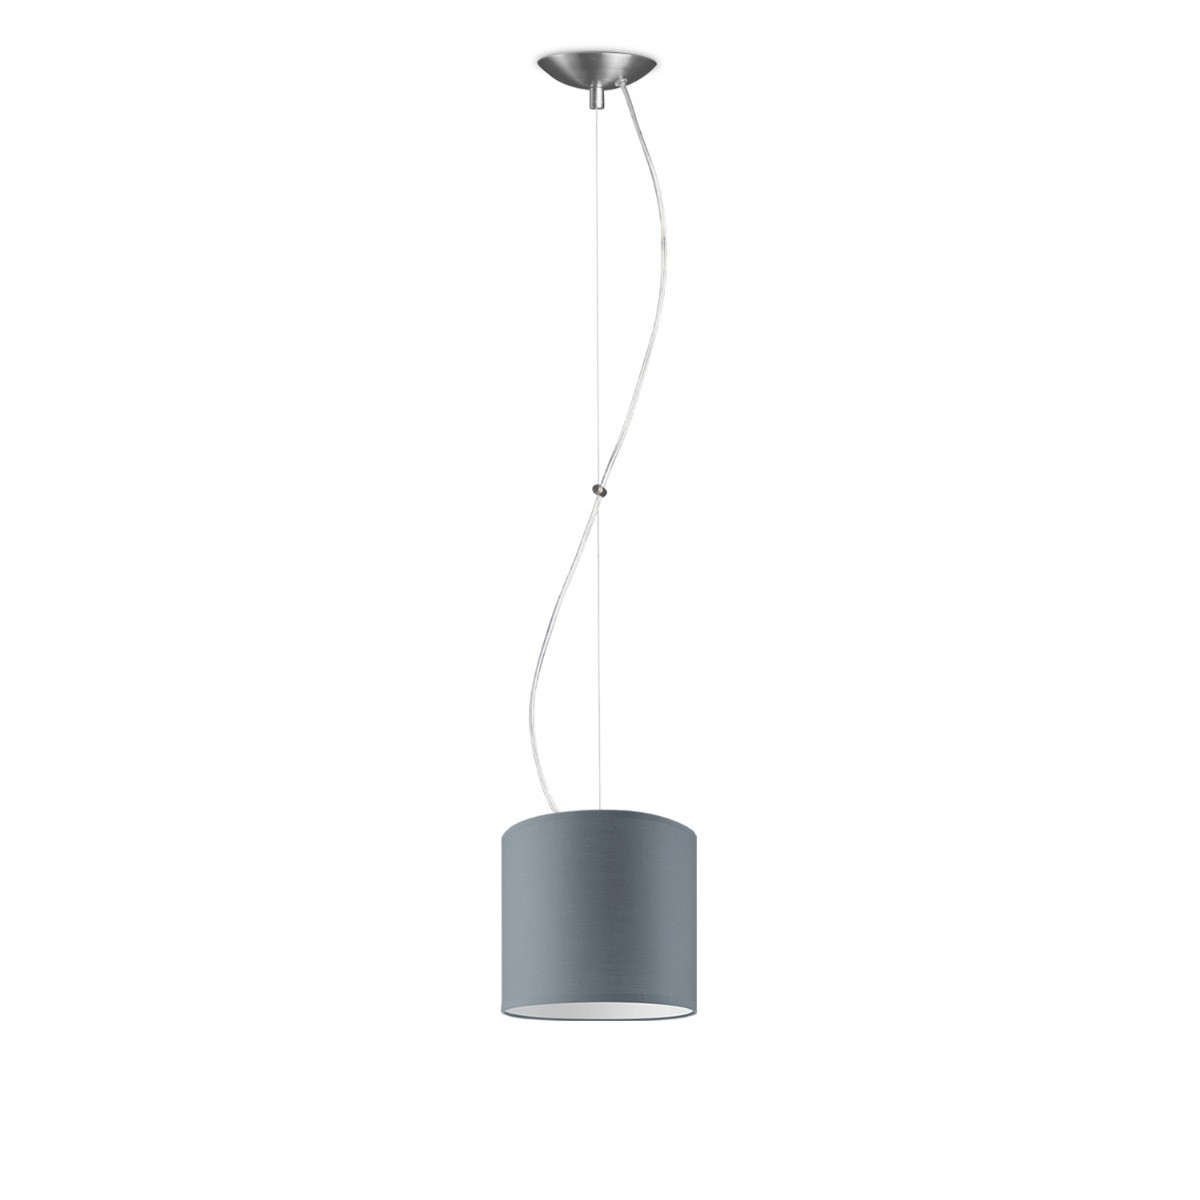 Light depot - hanglamp Basic Deluxe Bling Ø 16 cm - lichtgrijs - Outlet